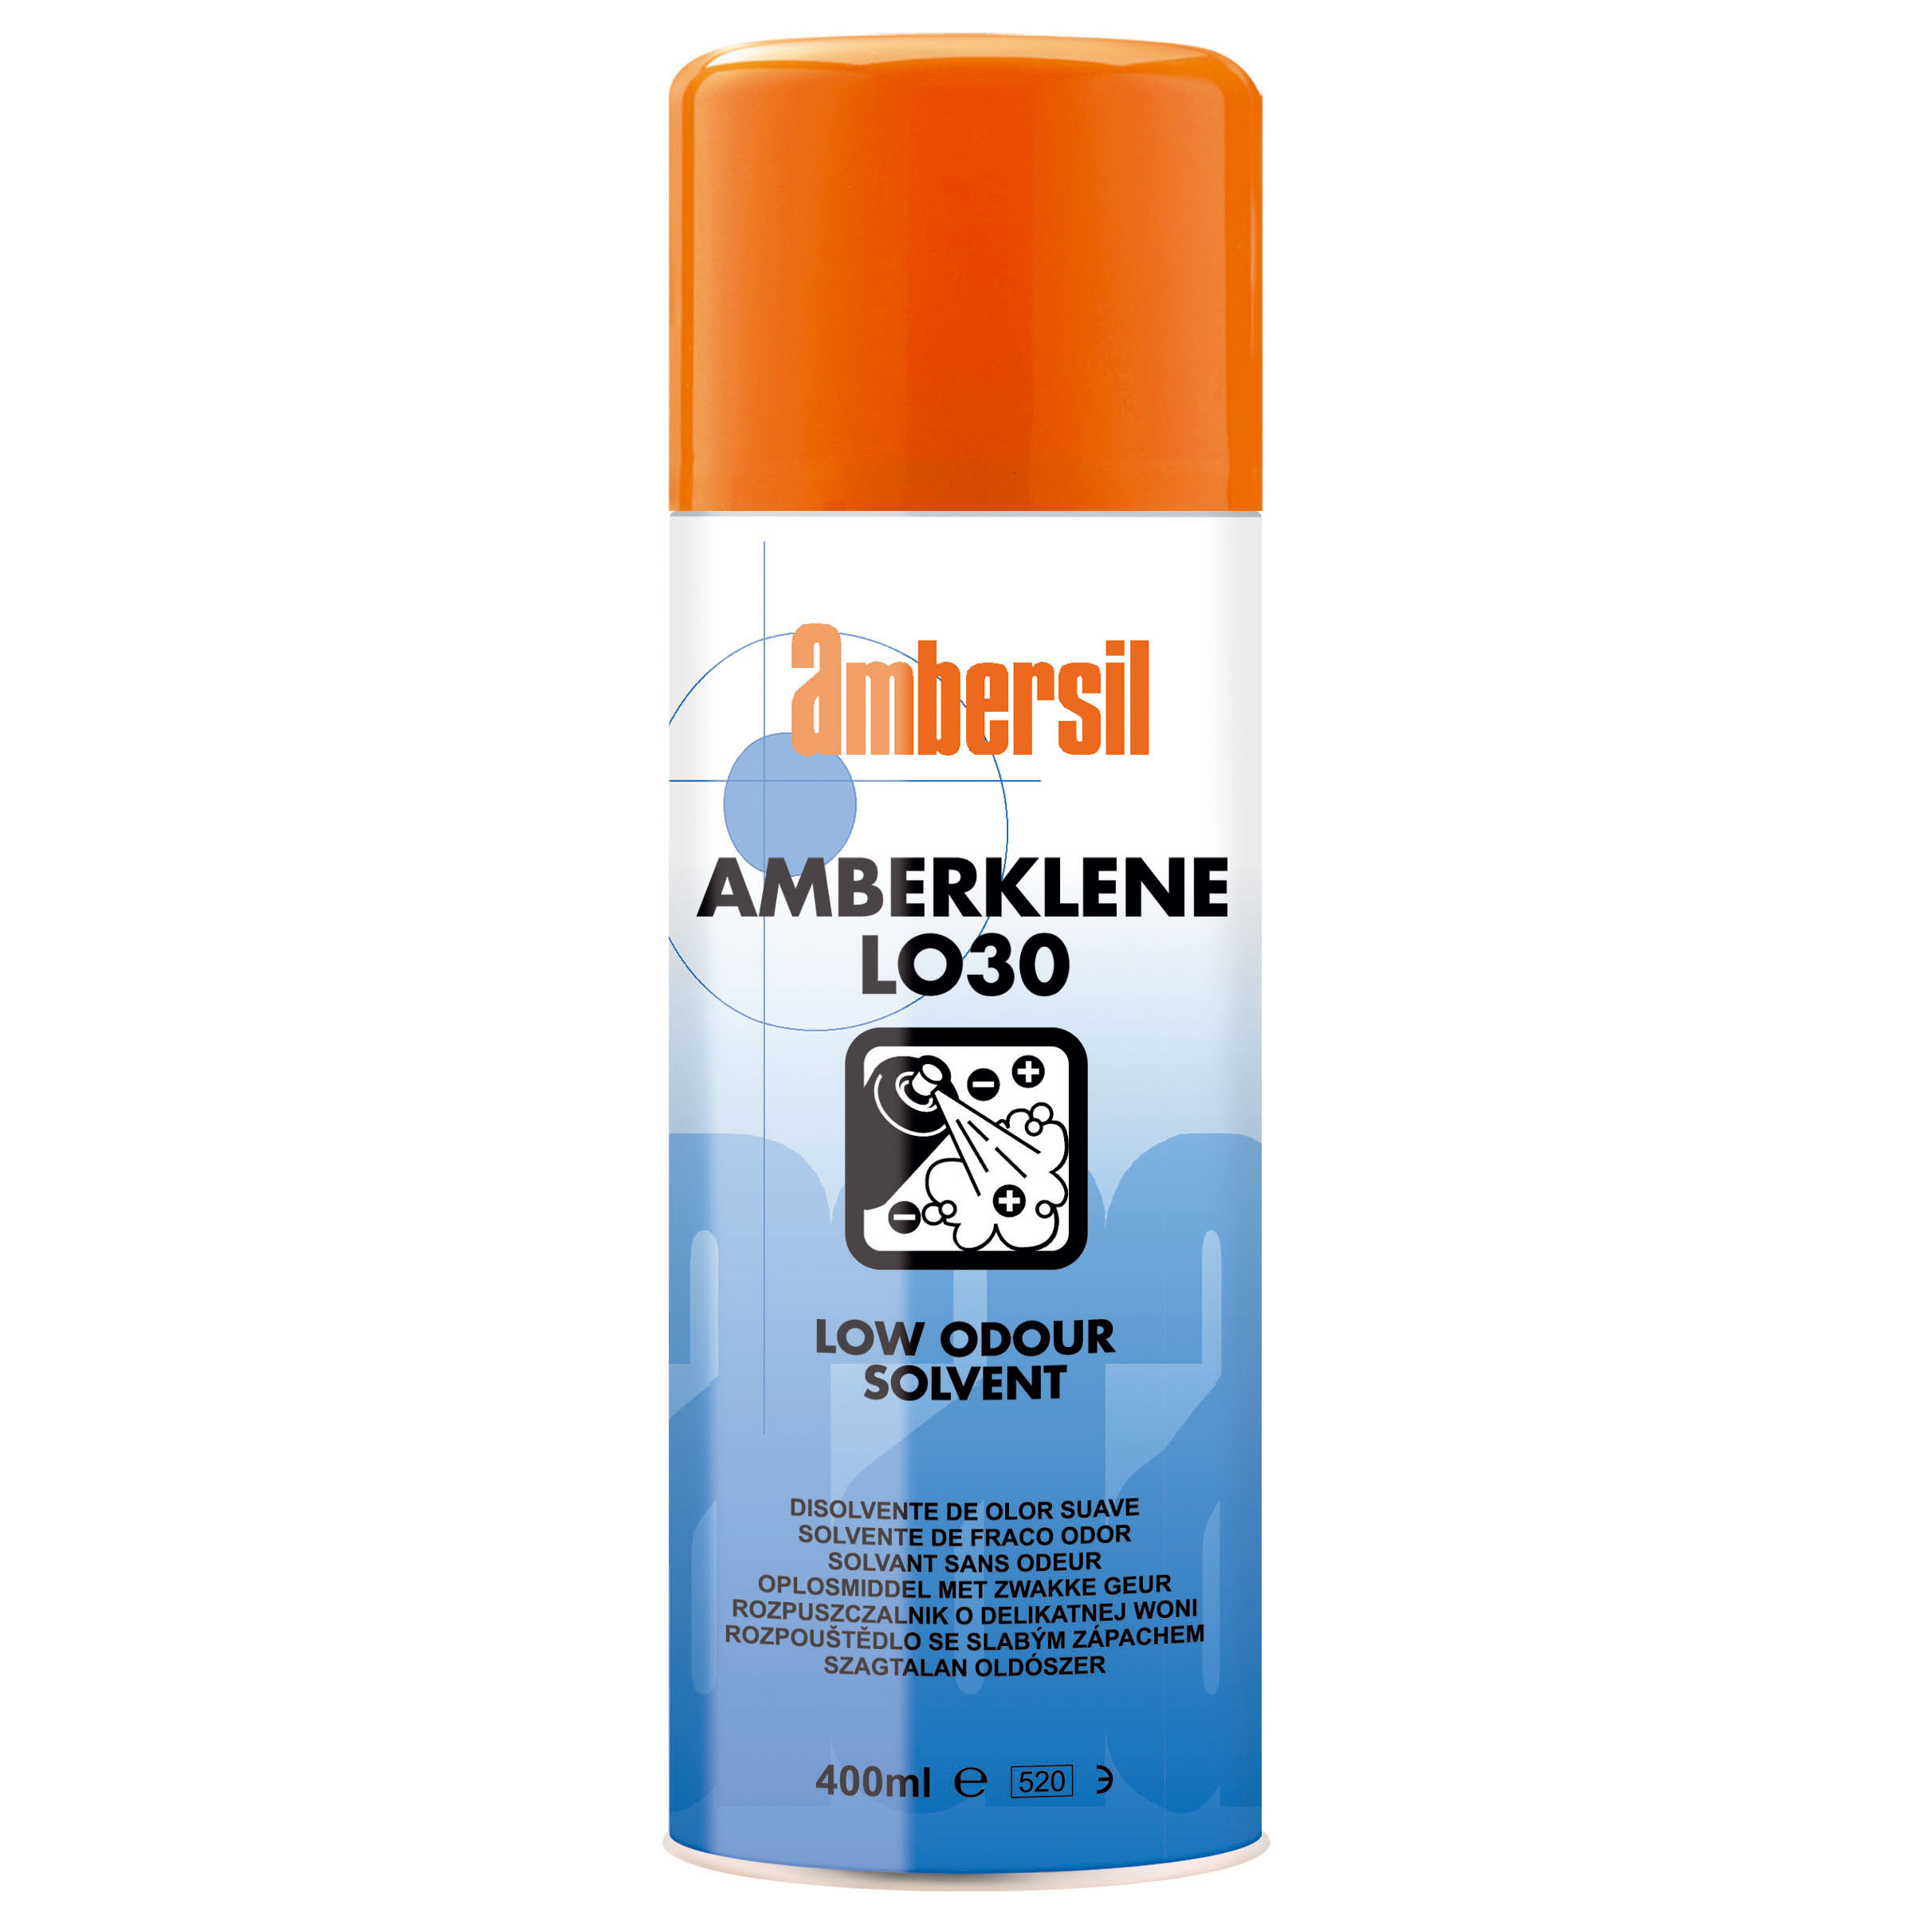 400ml Amberklene Lo30 Low Odour Solvent Cleaner Degreaser